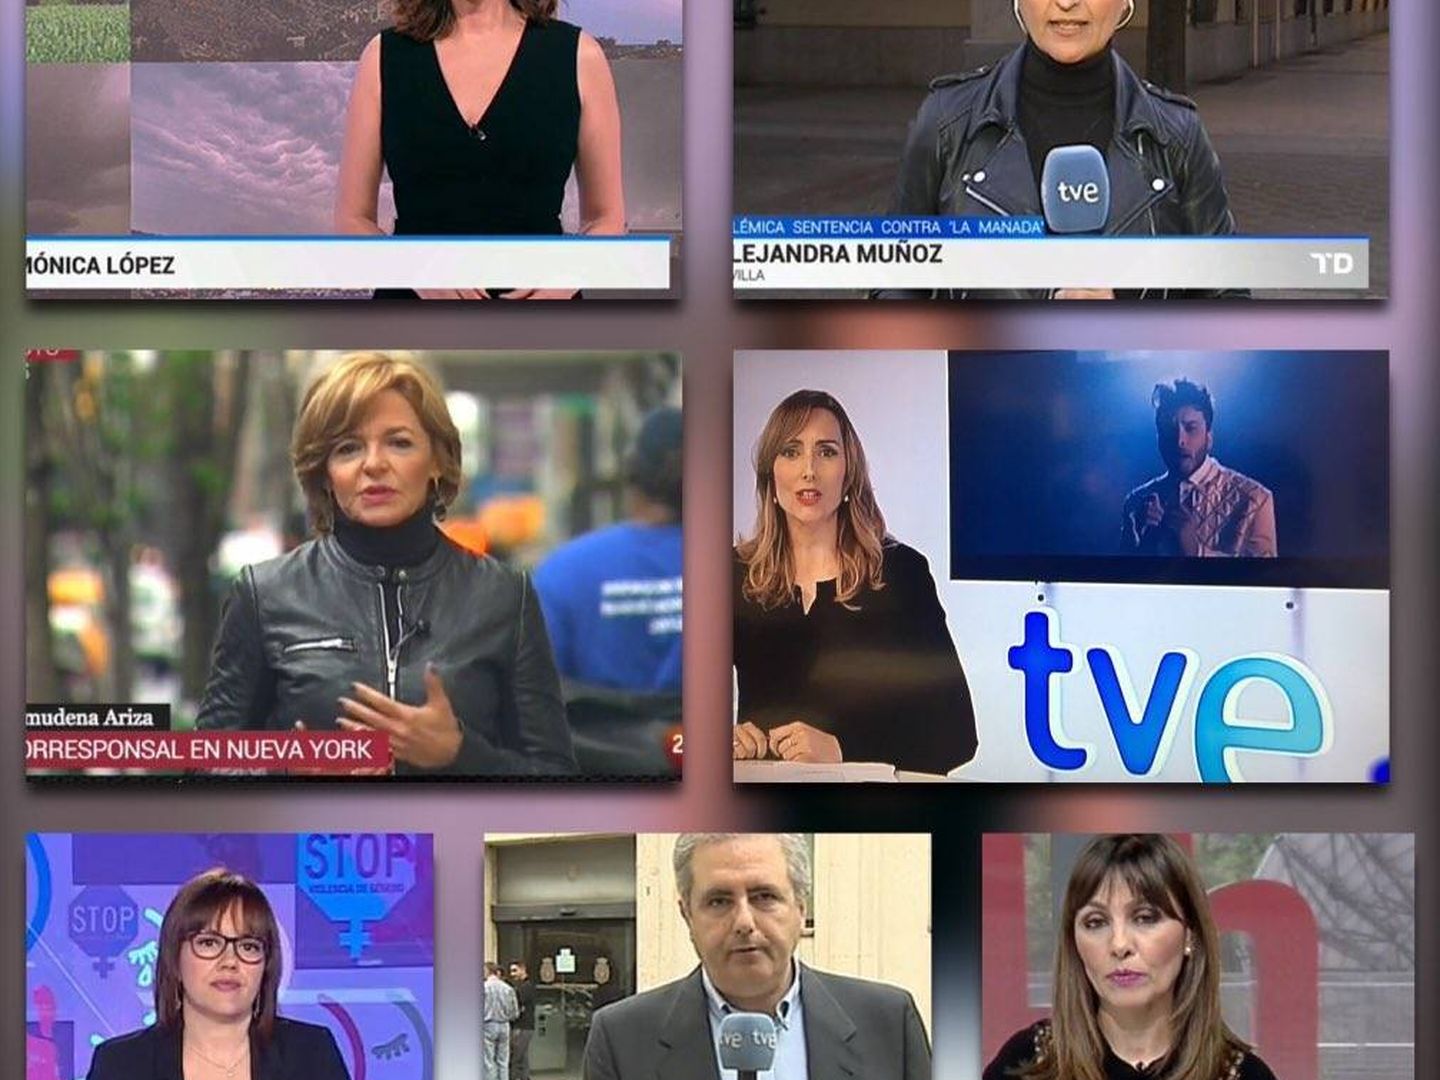 Redactores y presentadores de TVE visten de negro para visibilizar su protesta por el bloqueo en la renovación de la corporación. (Twitter Consejo de Informativos de TVE)